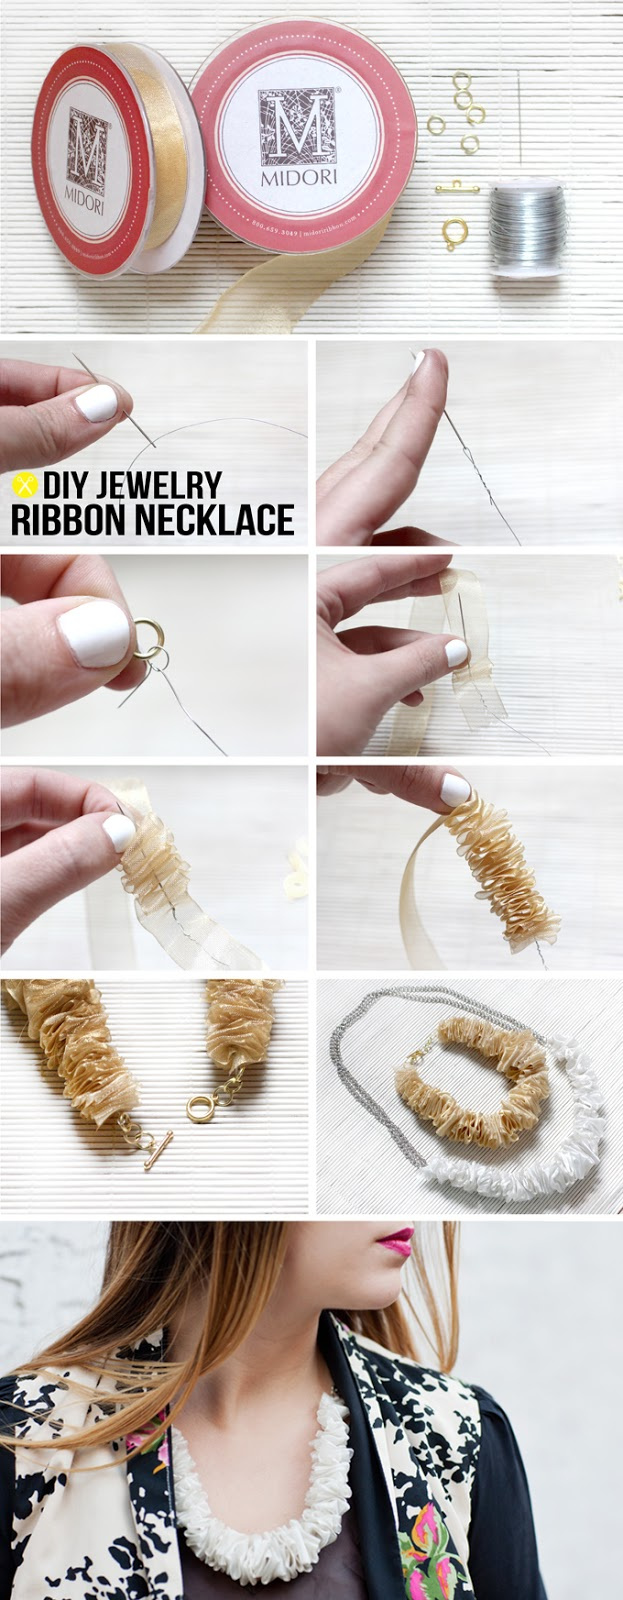 Ispydiy ribbonnecklace4